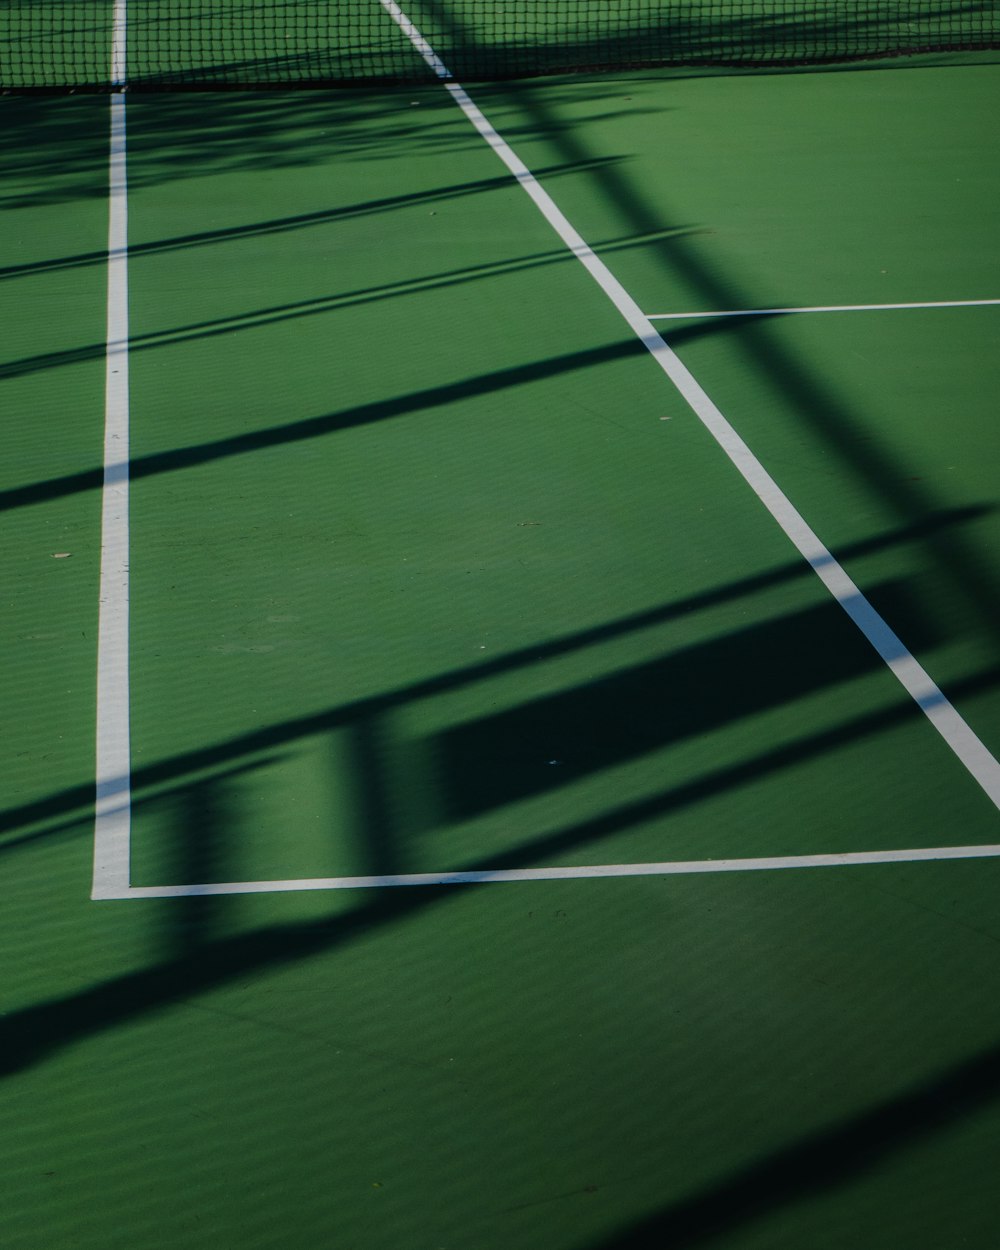 una persona en una cancha de tenis con una raqueta